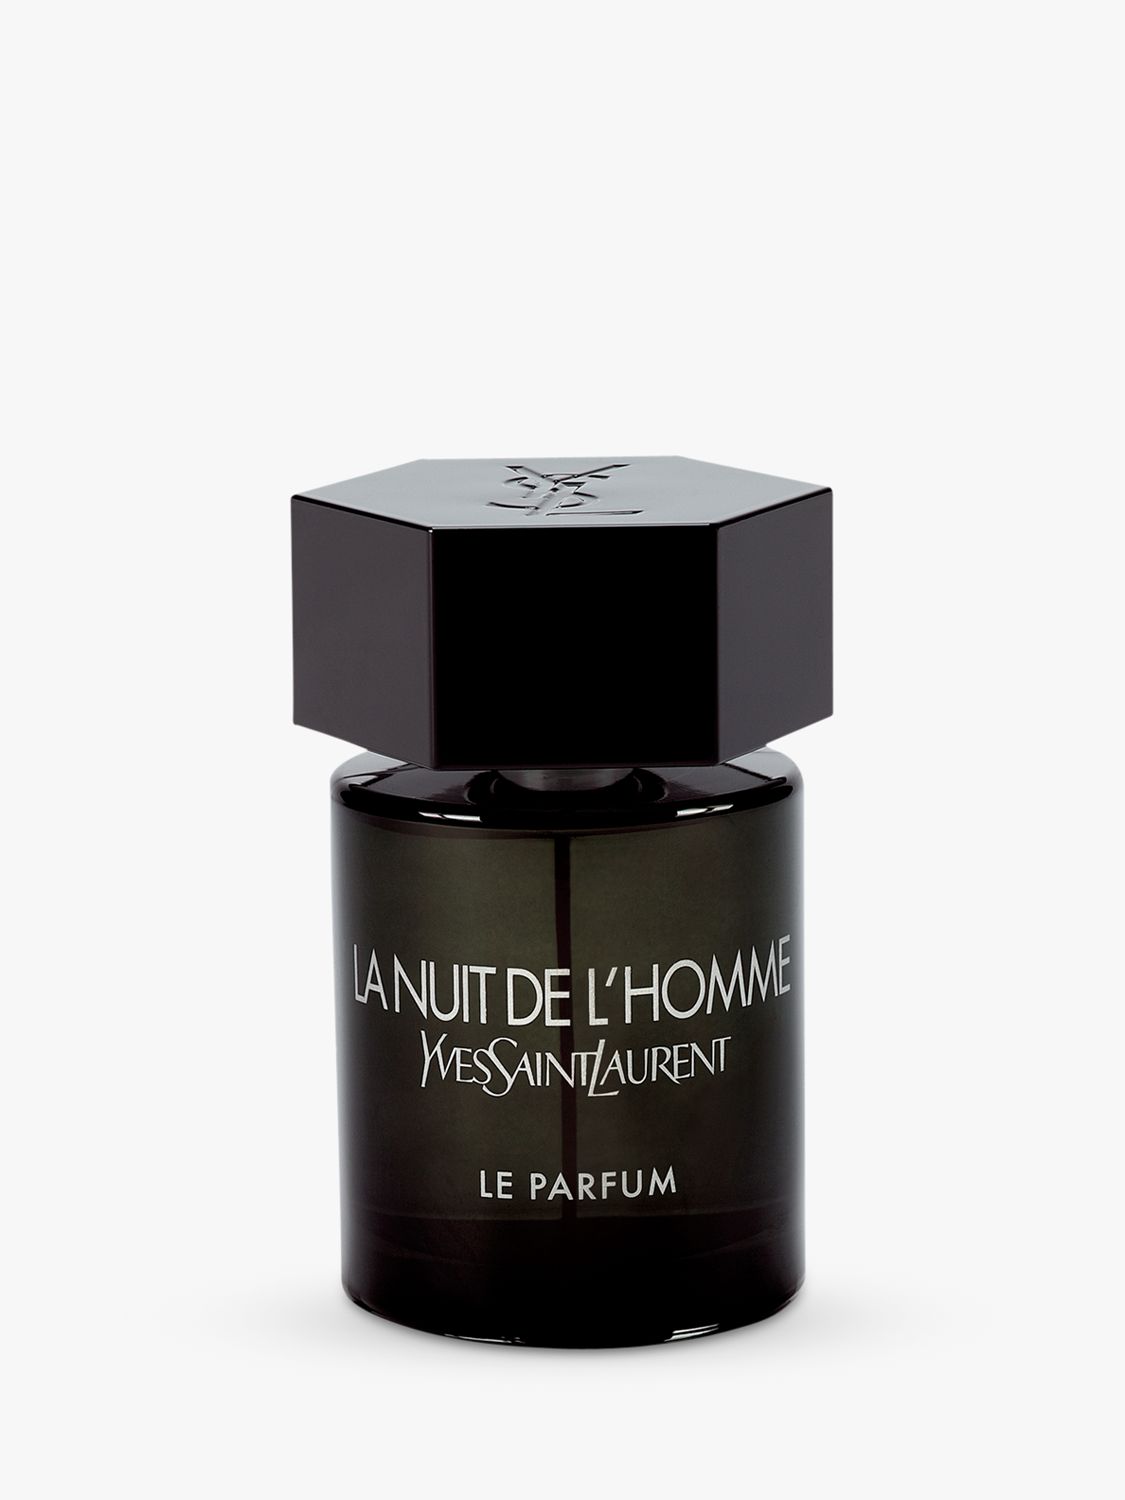 Yves Saint Laurent L'Homme La Nuit Eau de Parfum, 60ml at John Lewis ...